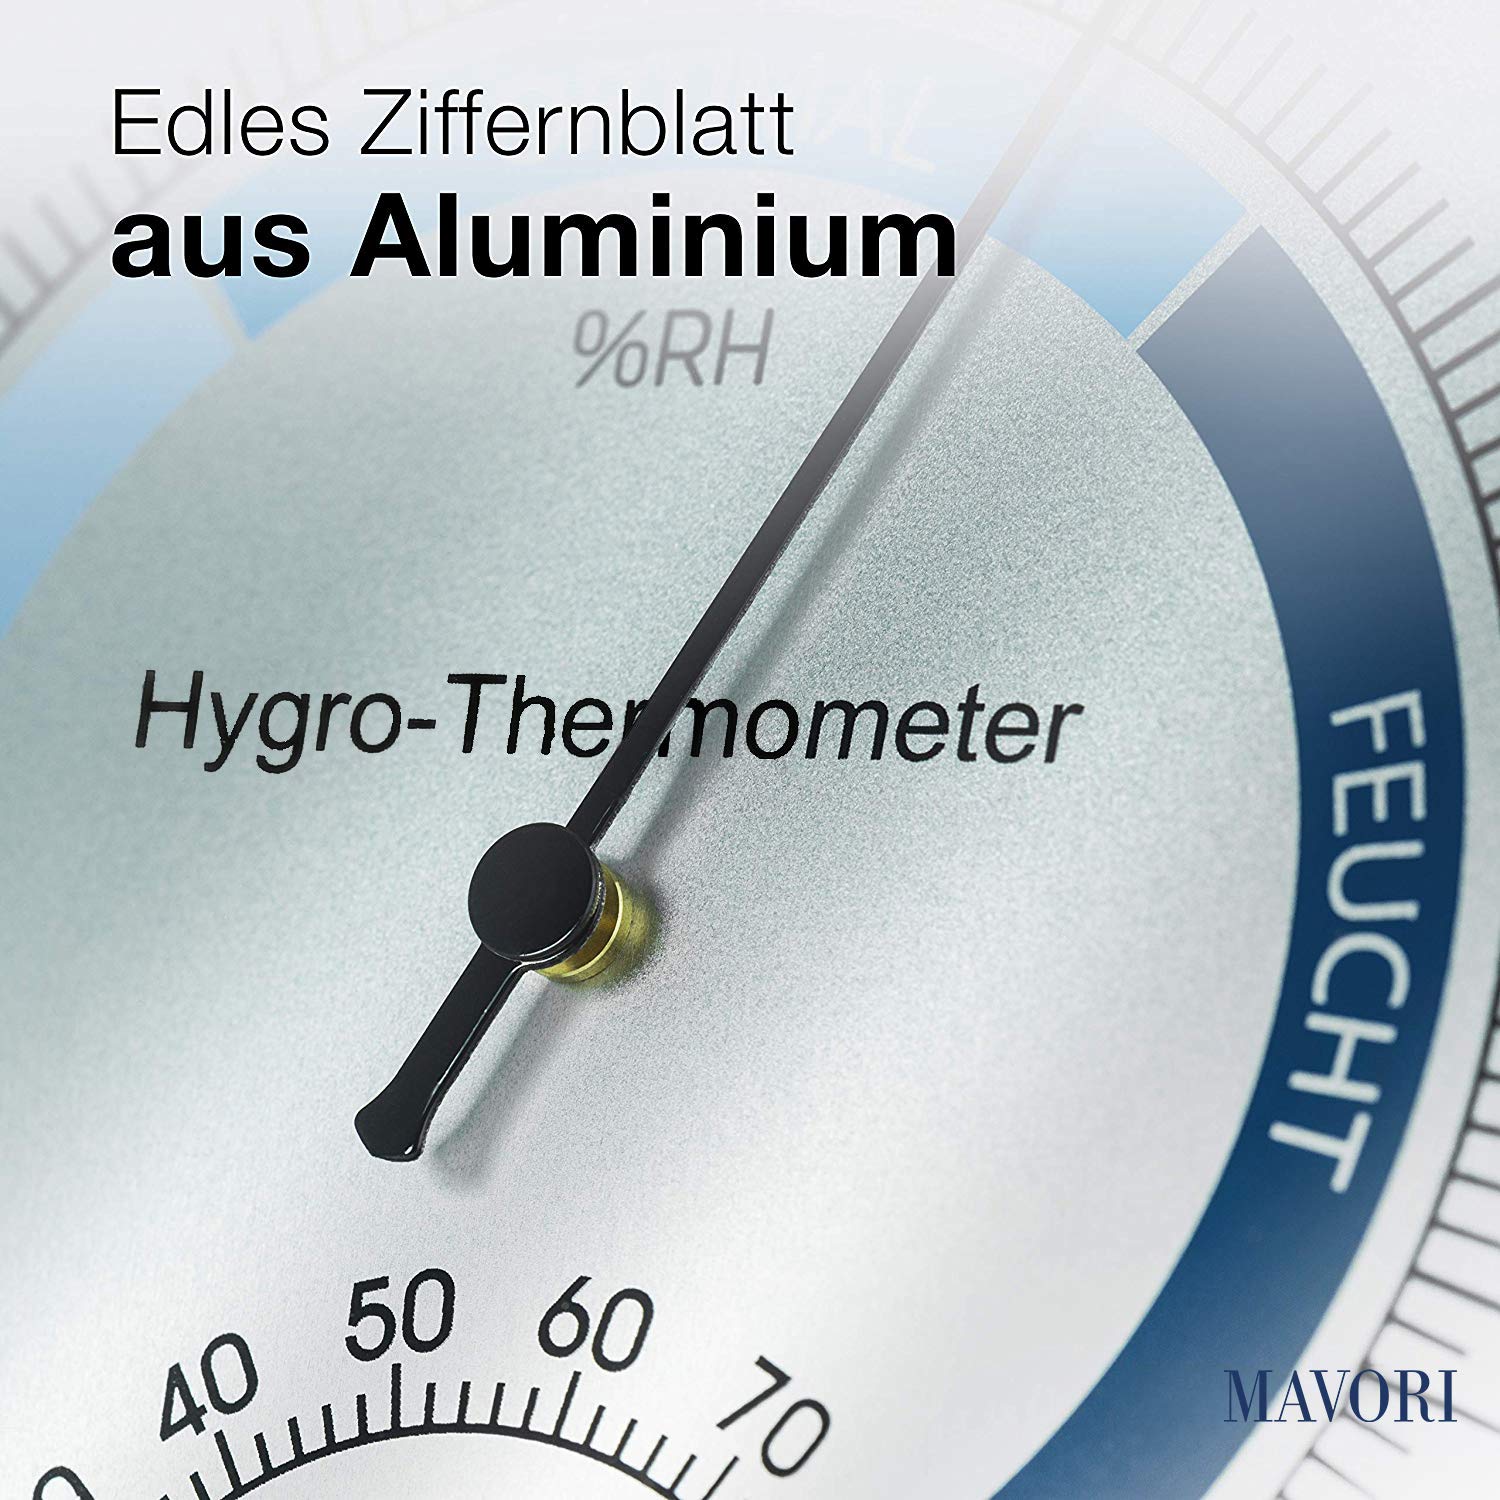 Termometro igrometro analogico per interni - Misuratore di umidità in  acciaio inossidabile di alta qualità E